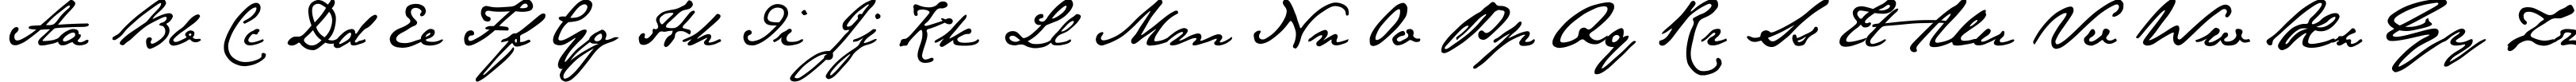 Пример написания английского алфавита шрифтом JaneAusten